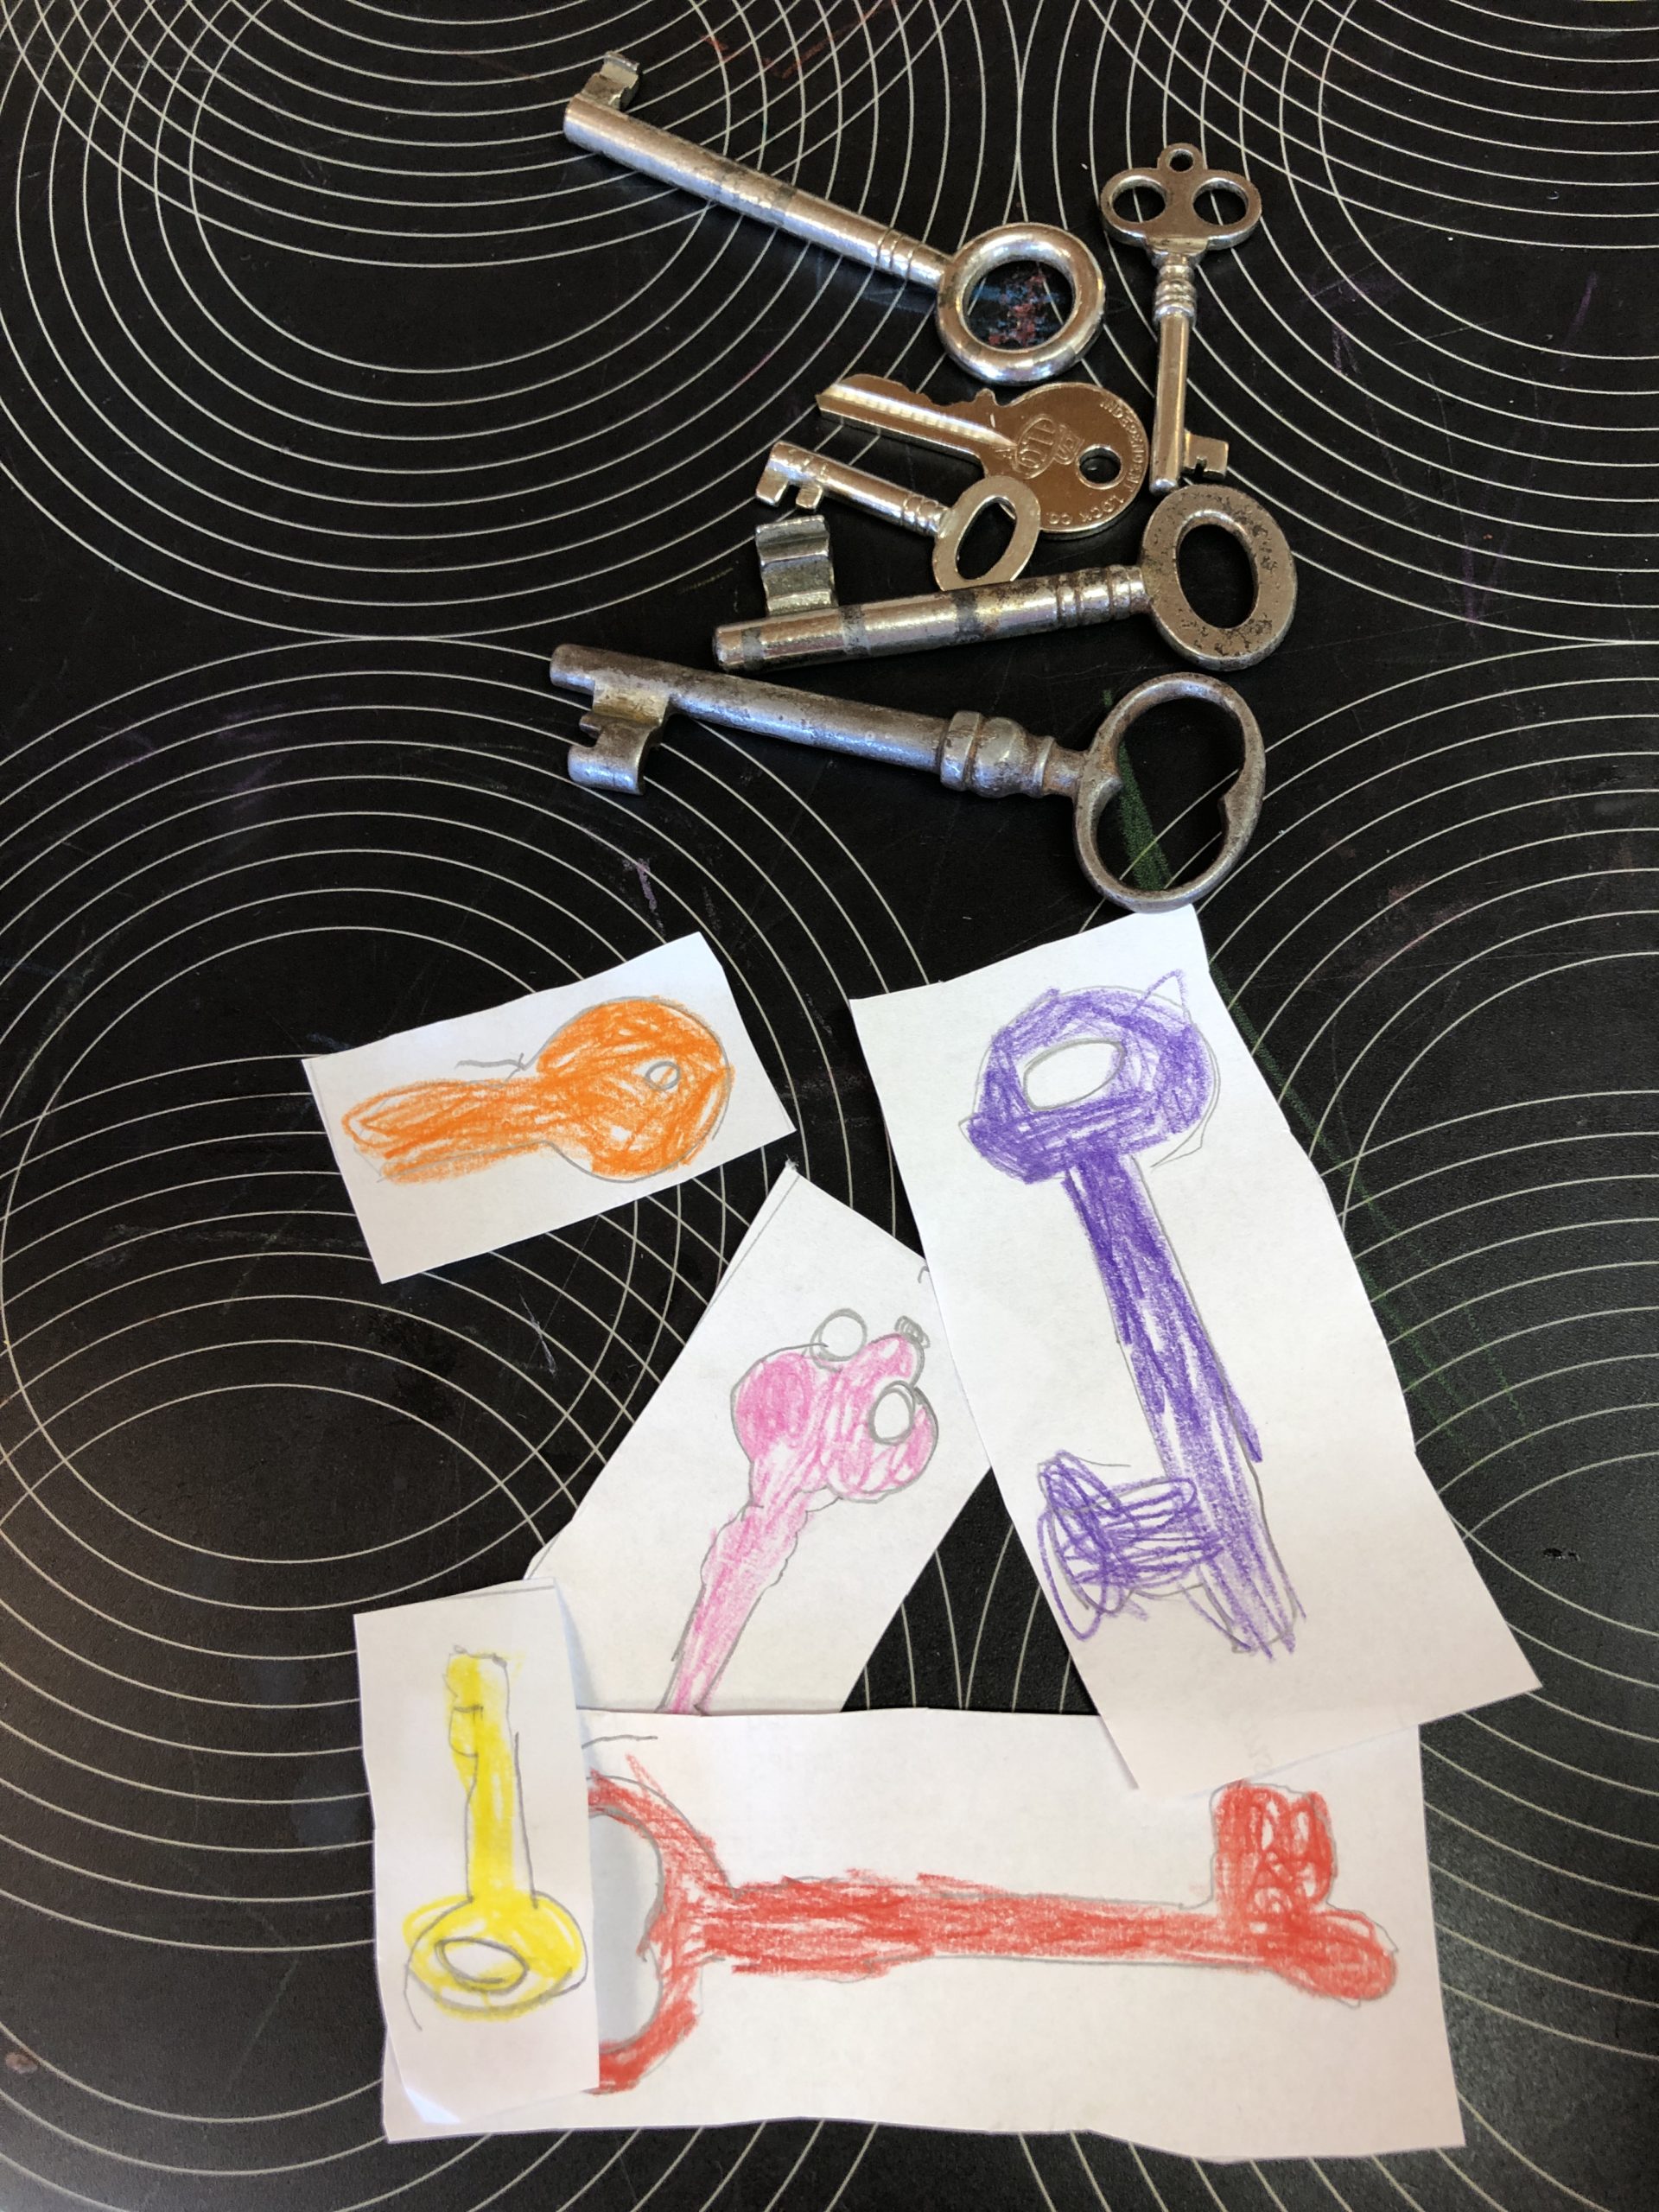 Bild zum Schritt 12 für das Bastel- und DIY-Abenteuer für Kinder: 'Nun können die gemalten farbigen Schlüssel den echten Schlüsseln zugeordnet...'